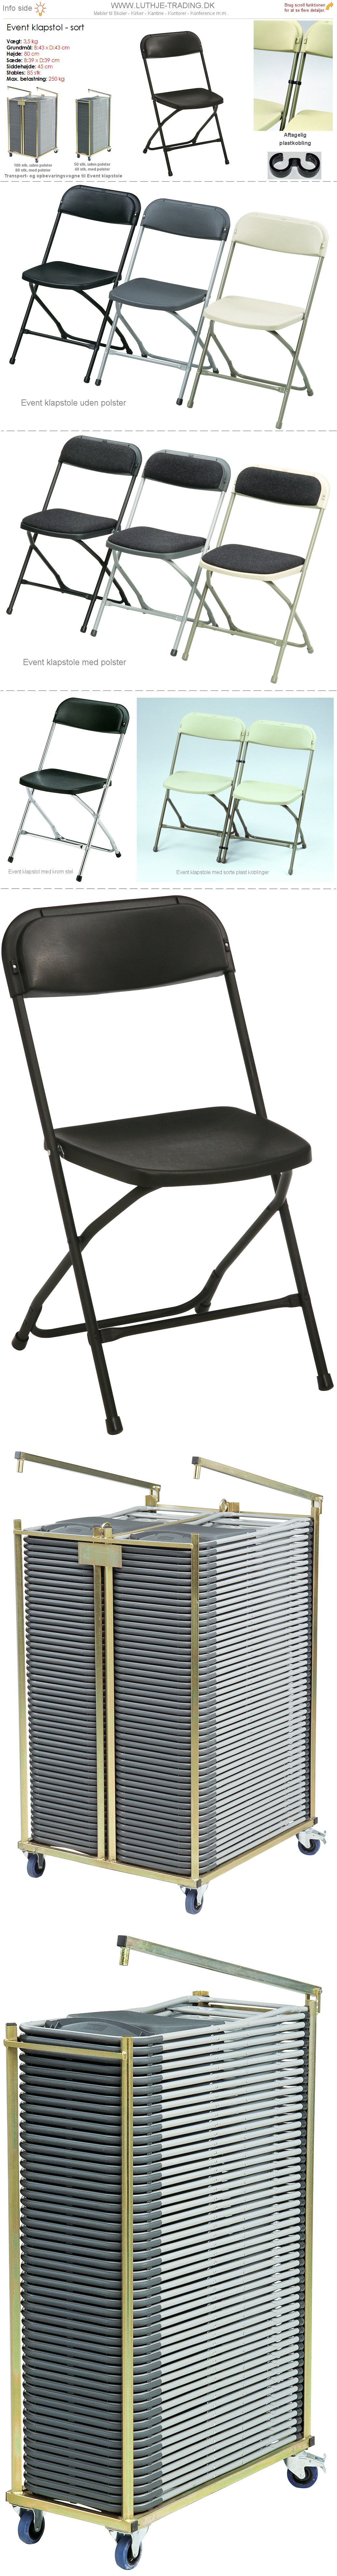 Klapstol Event sort plast og stel. Der findes en transport- og opbevaringsvogn til denne klapstol. Vi giver gerne et godt tilbud på denne klapstol.